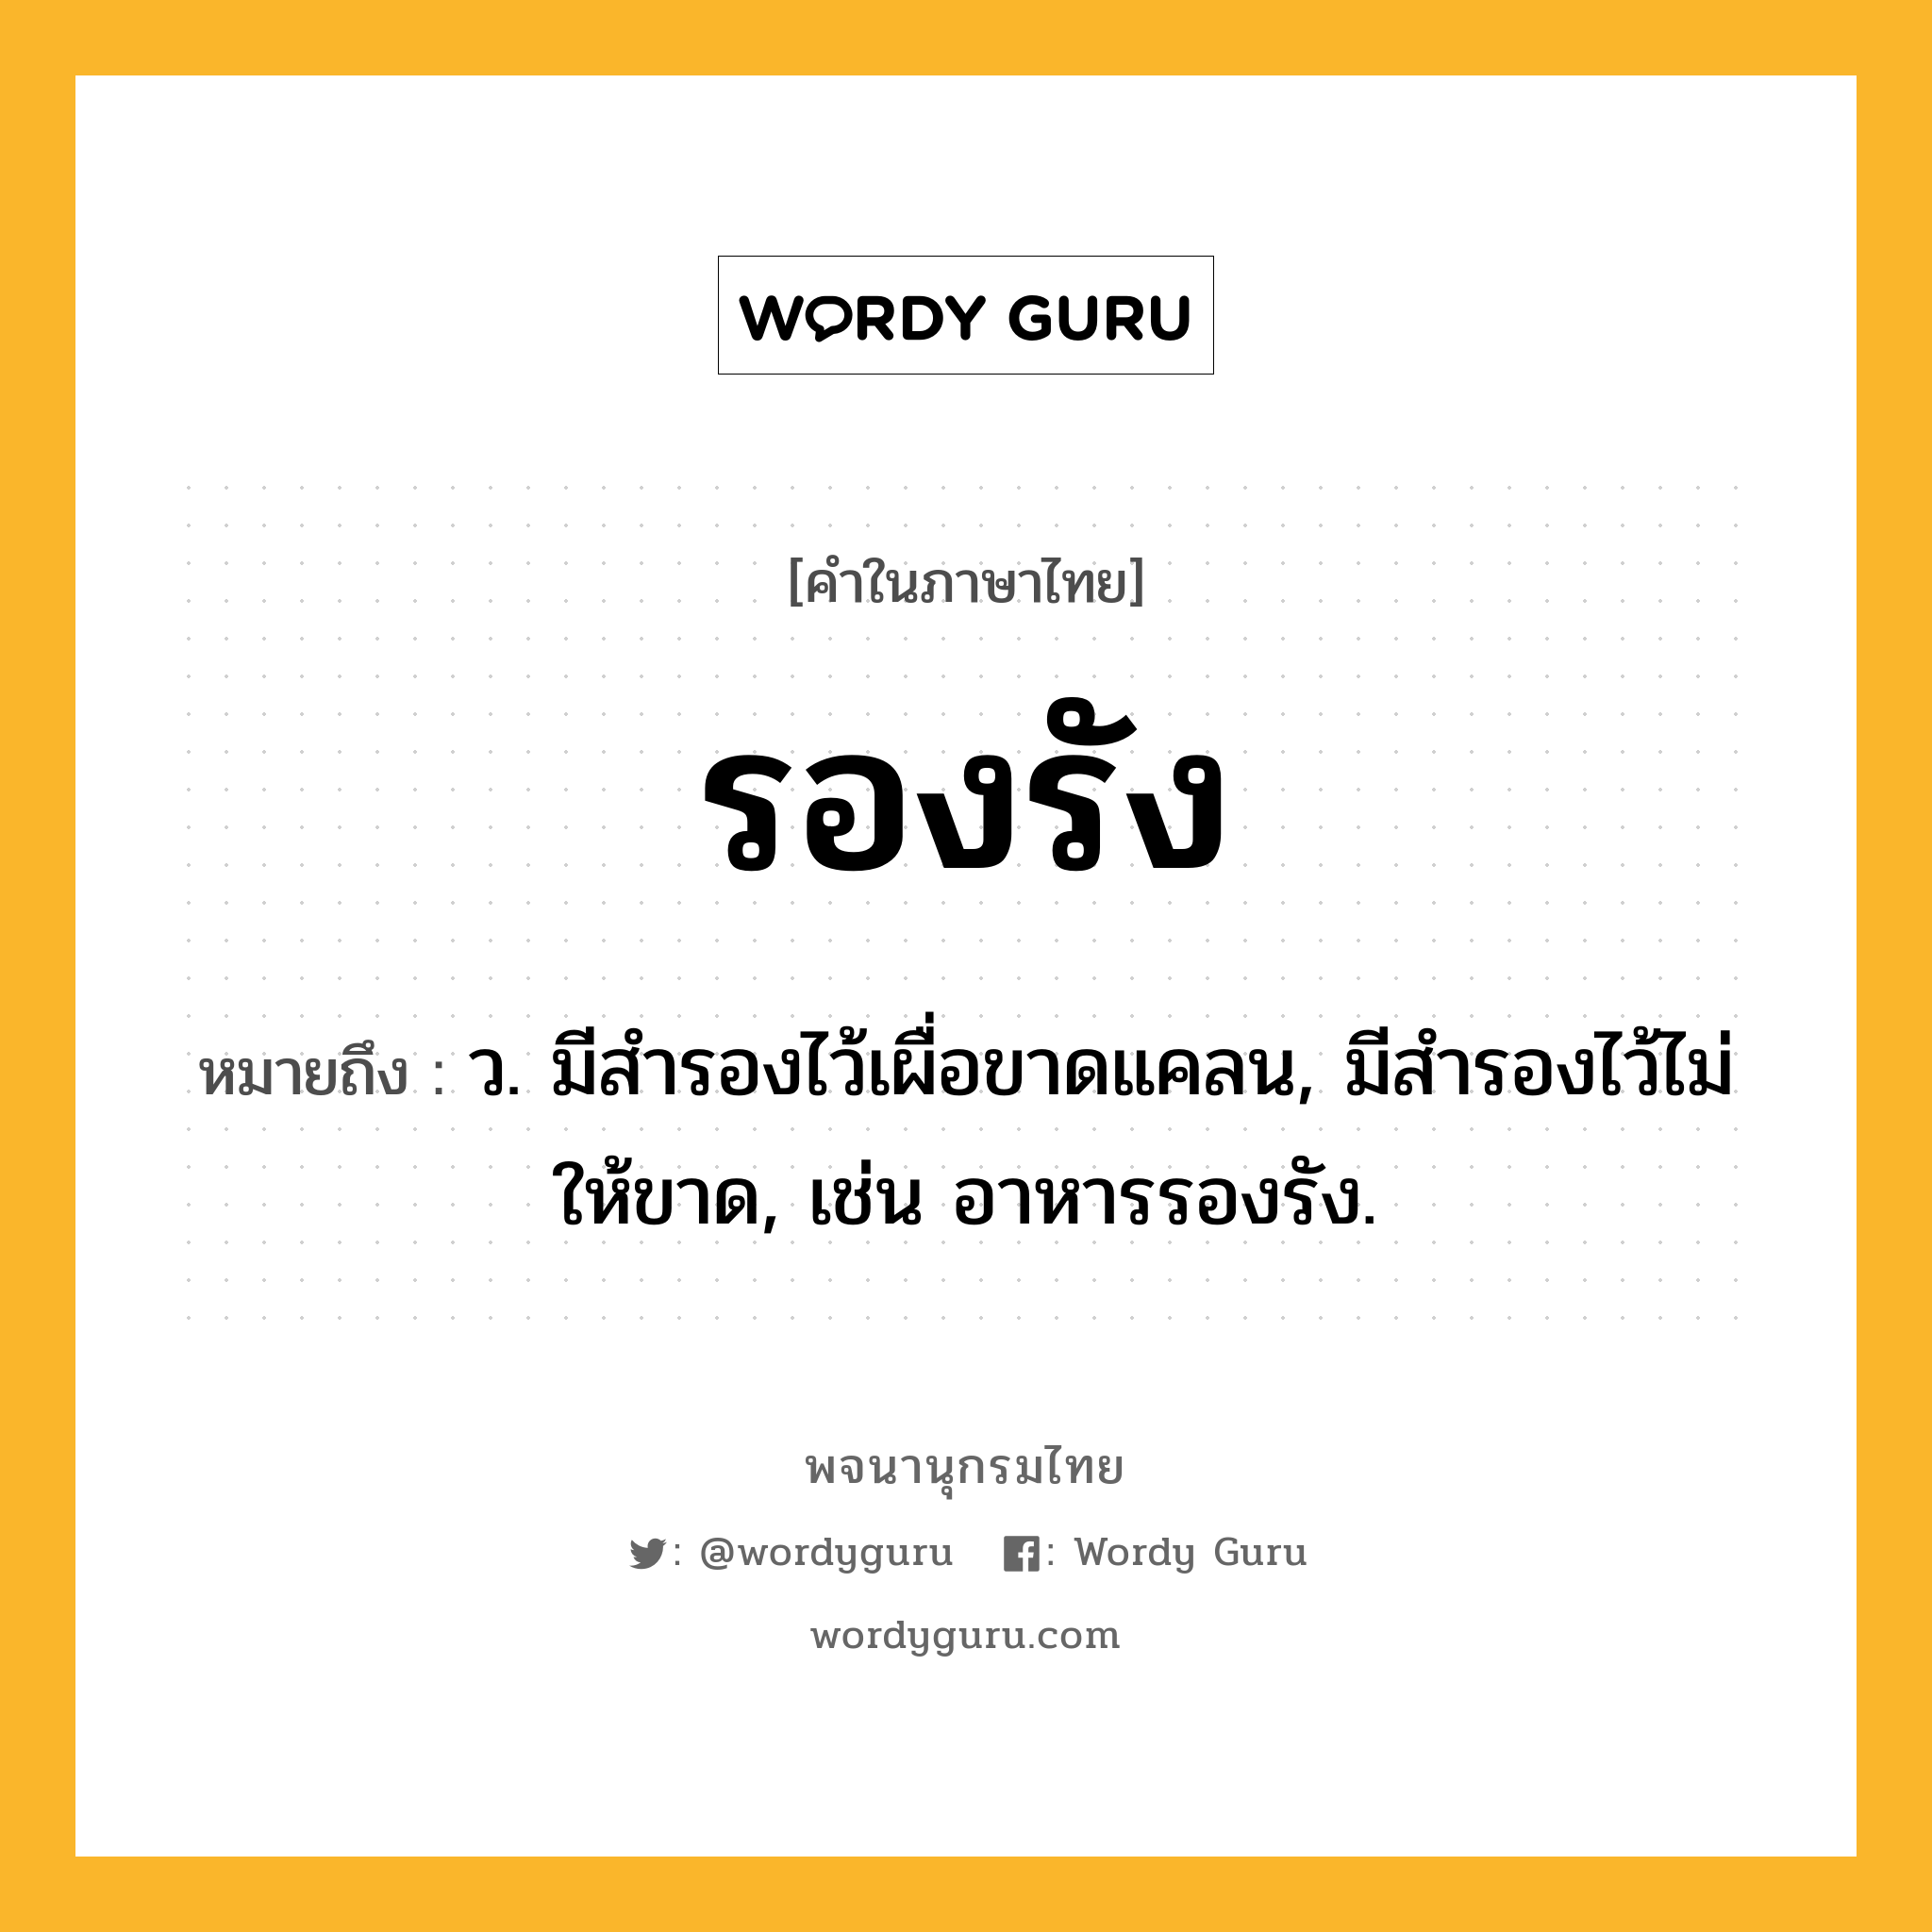 รองรัง หมายถึงอะไร?, คำในภาษาไทย รองรัง หมายถึง ว. มีสำรองไว้เผื่อขาดแคลน, มีสำรองไว้ไม่ให้ขาด, เช่น อาหารรองรัง.